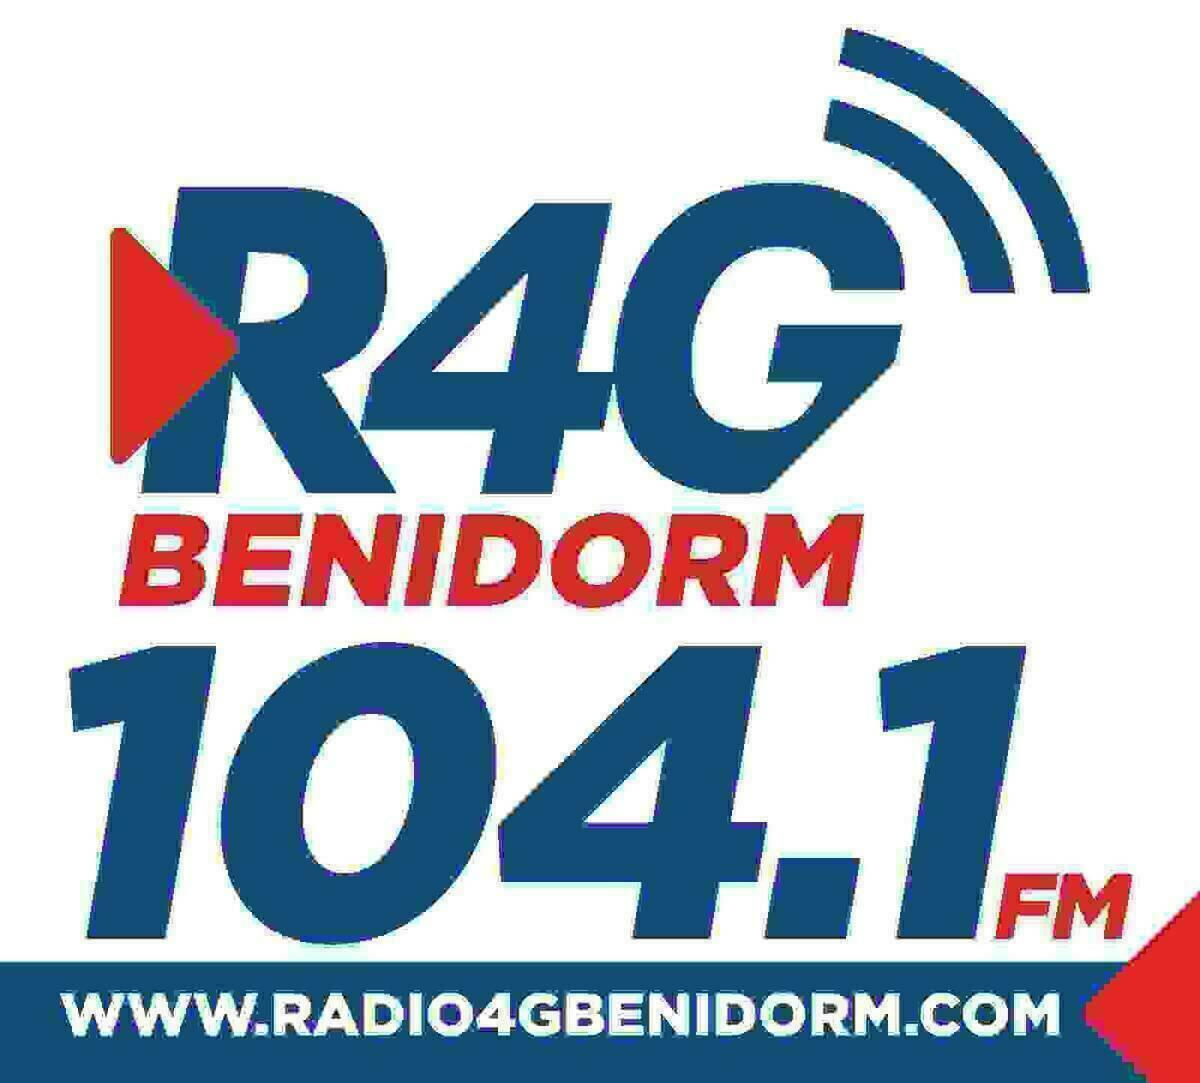 Comunicado oficial de Radio 4G Benidorm